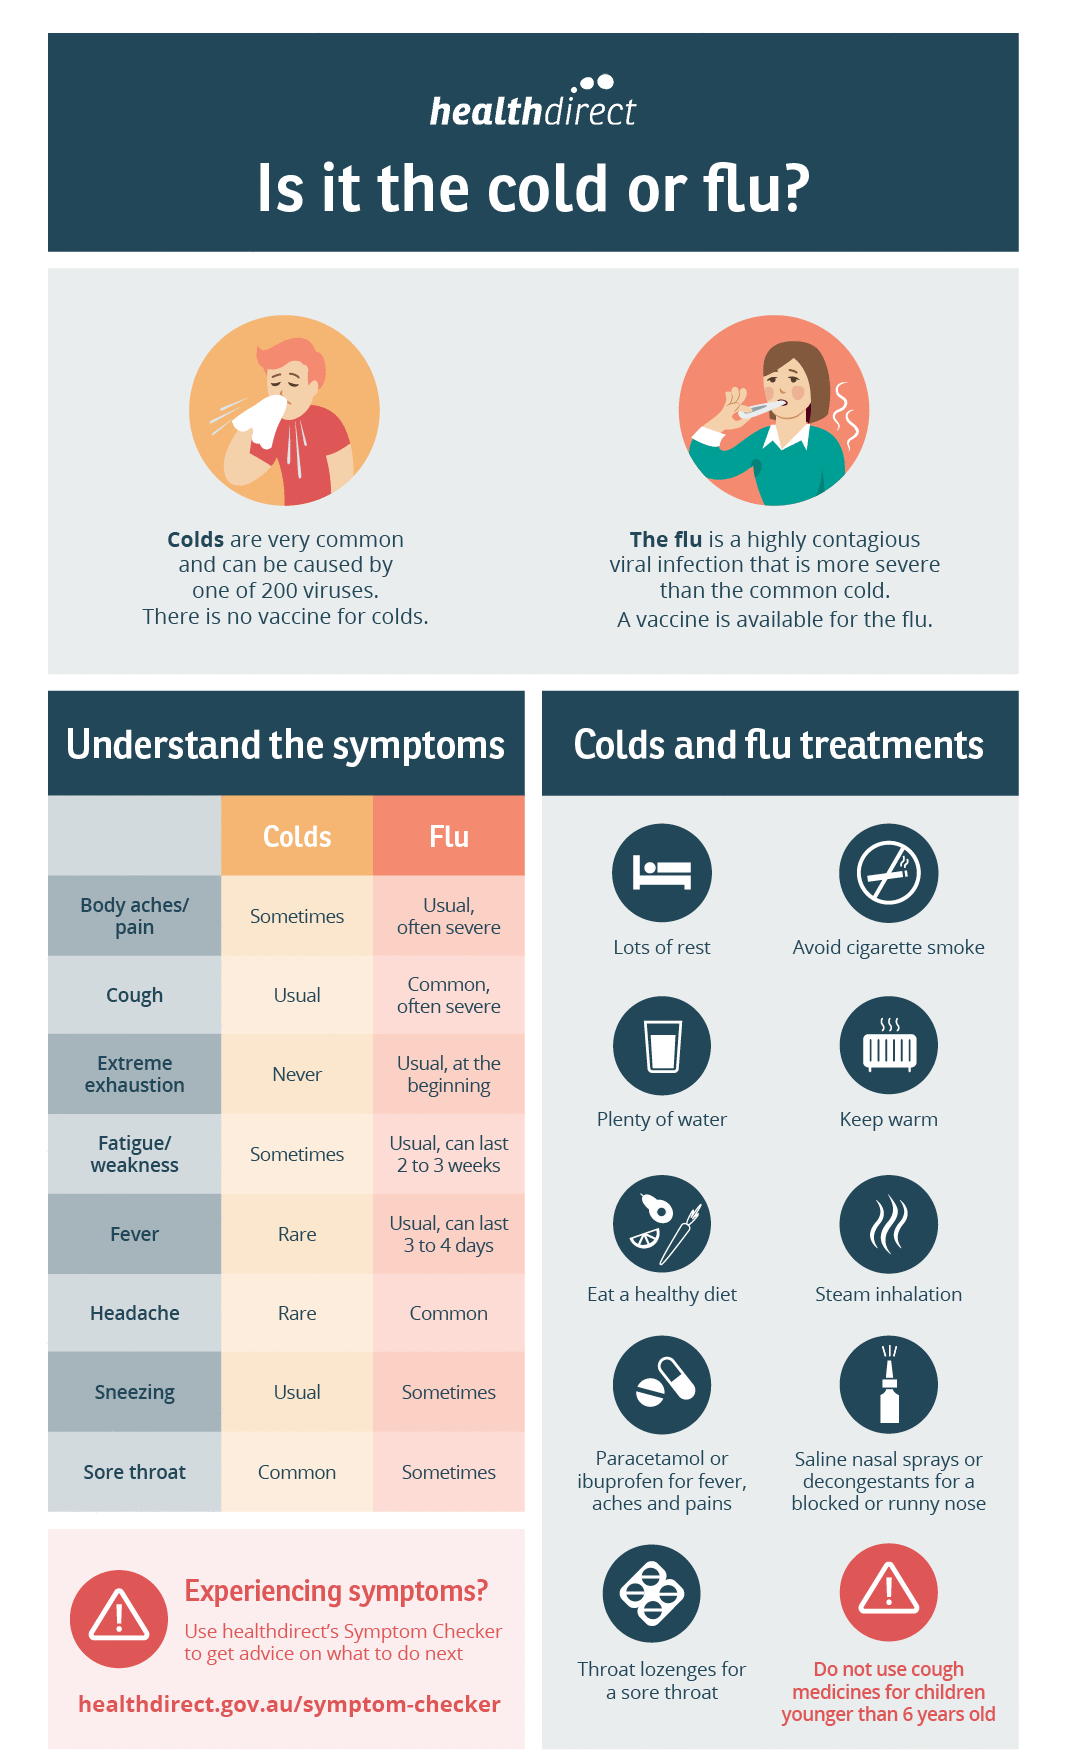 Aperçu de la toux et du rhume – cause, symptômes, options de traitement contre la toux et le rhume